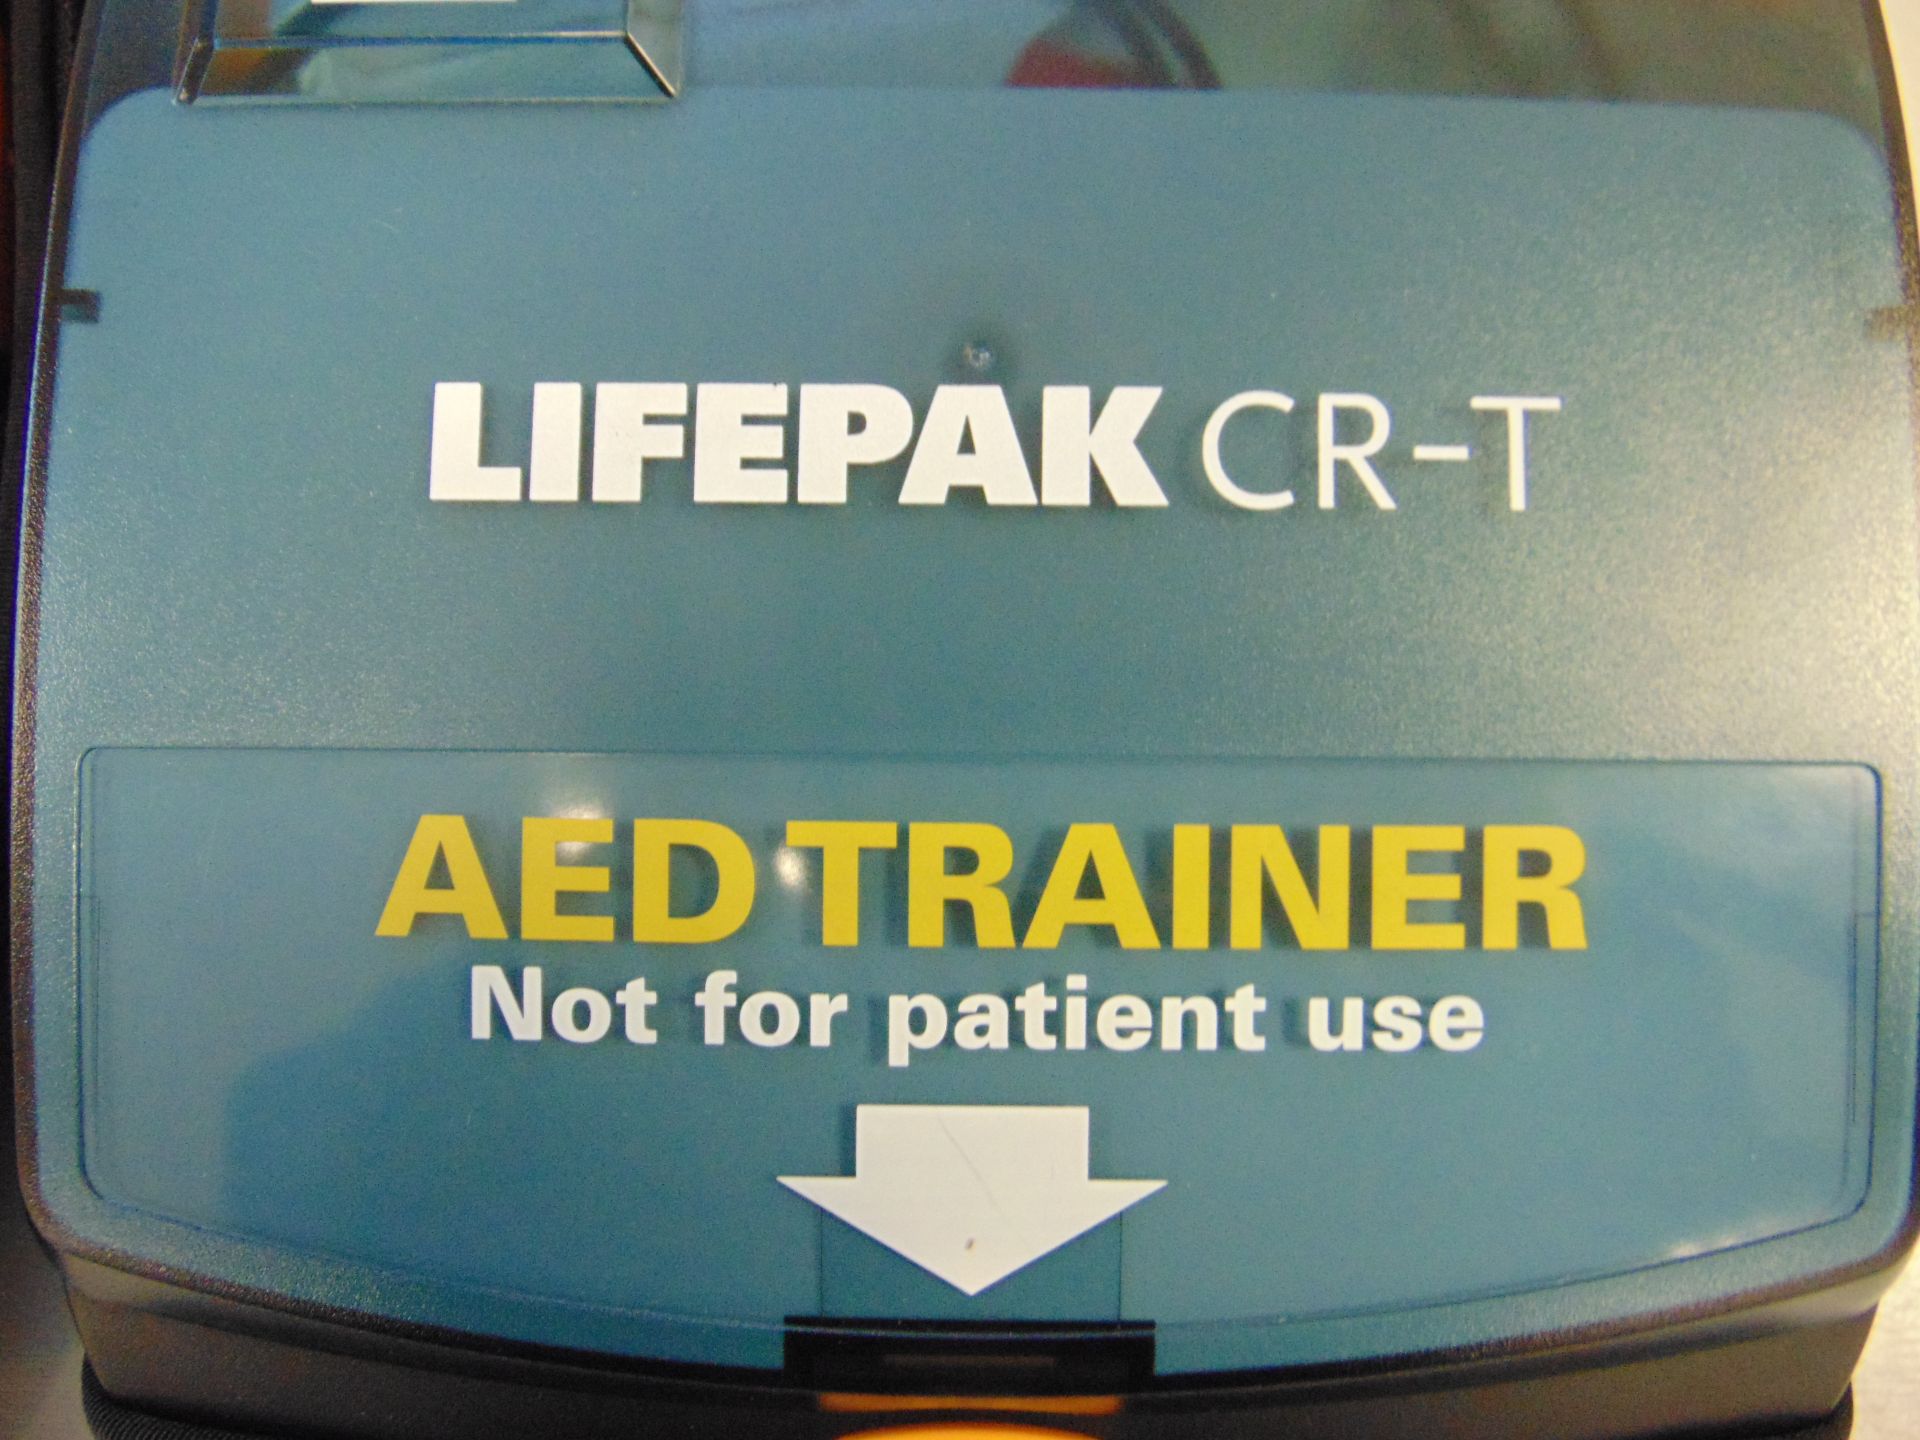 2 x Physio Controls Lifepak CR-T Defibrillator AED Trainer Unit in Carry Case - Bild 3 aus 4